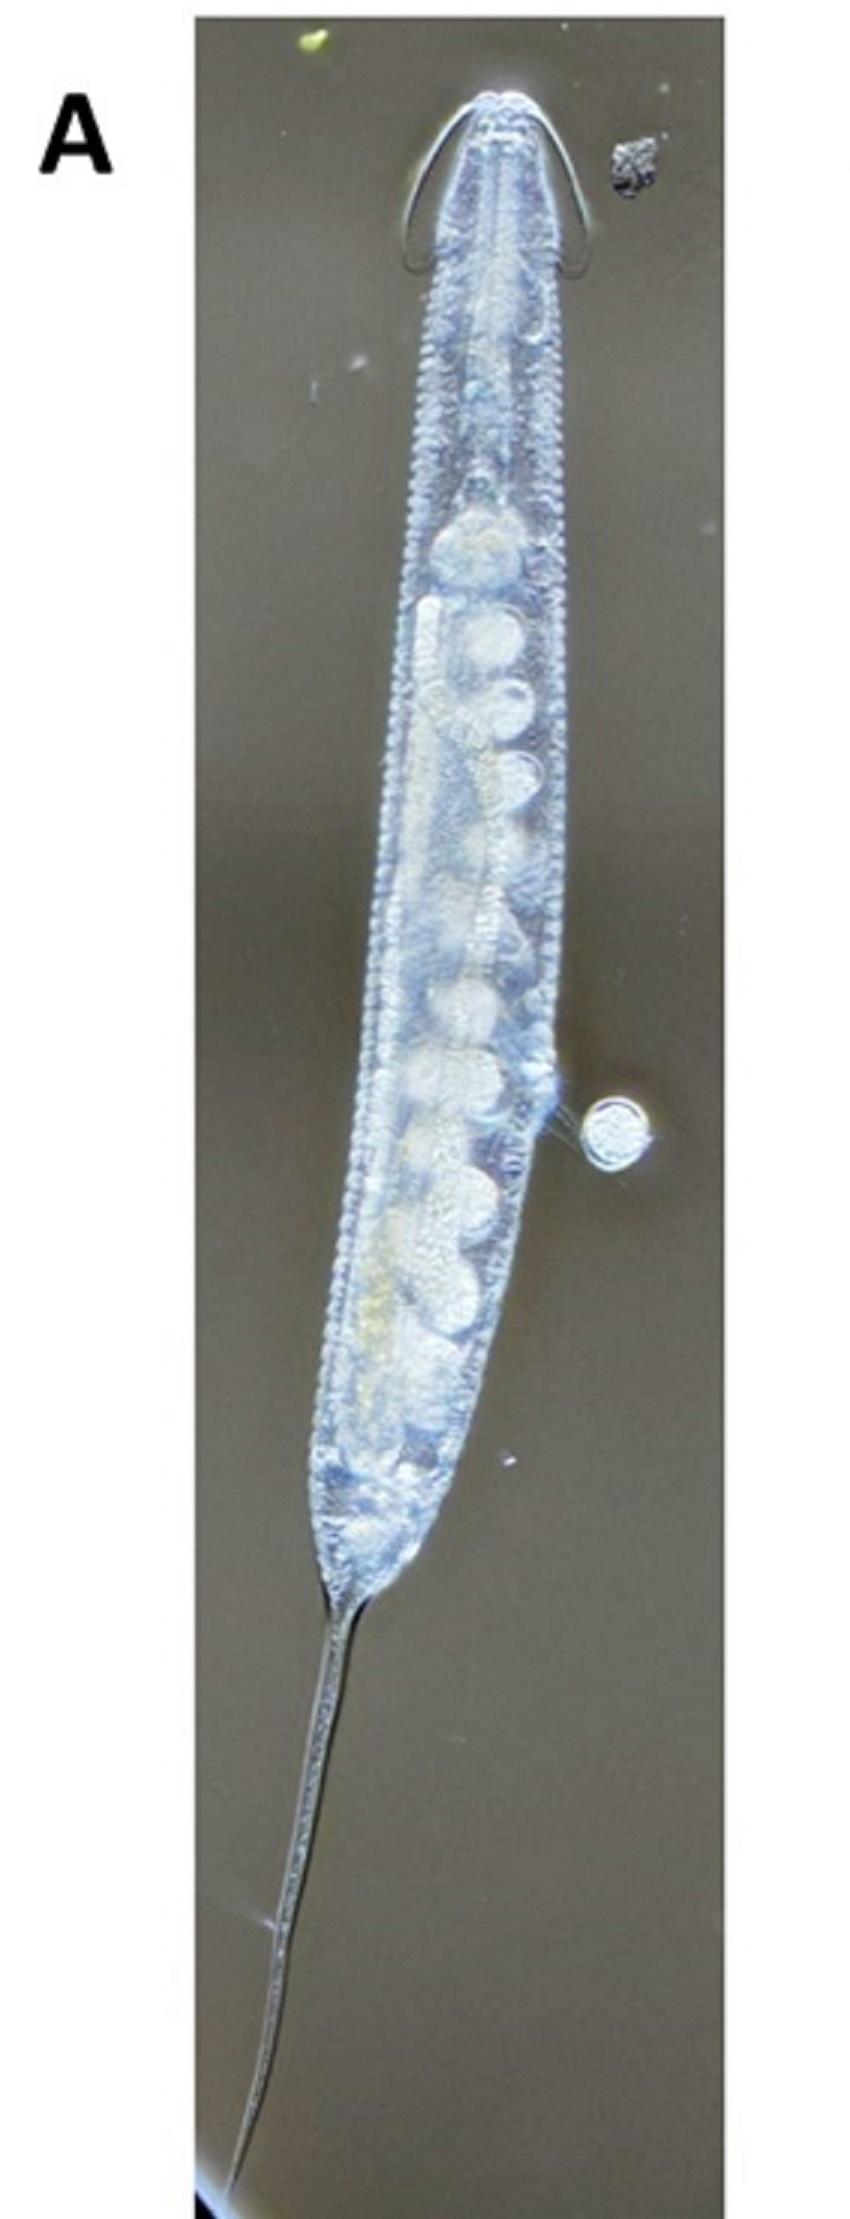 【中部大学】外来種ヤスデとともに日本にやってきた寄生性線虫を発見 新種「ビアトルムviatorum（ラテン語）：旅行者（日本語）」と命名（長谷川浩一教授）